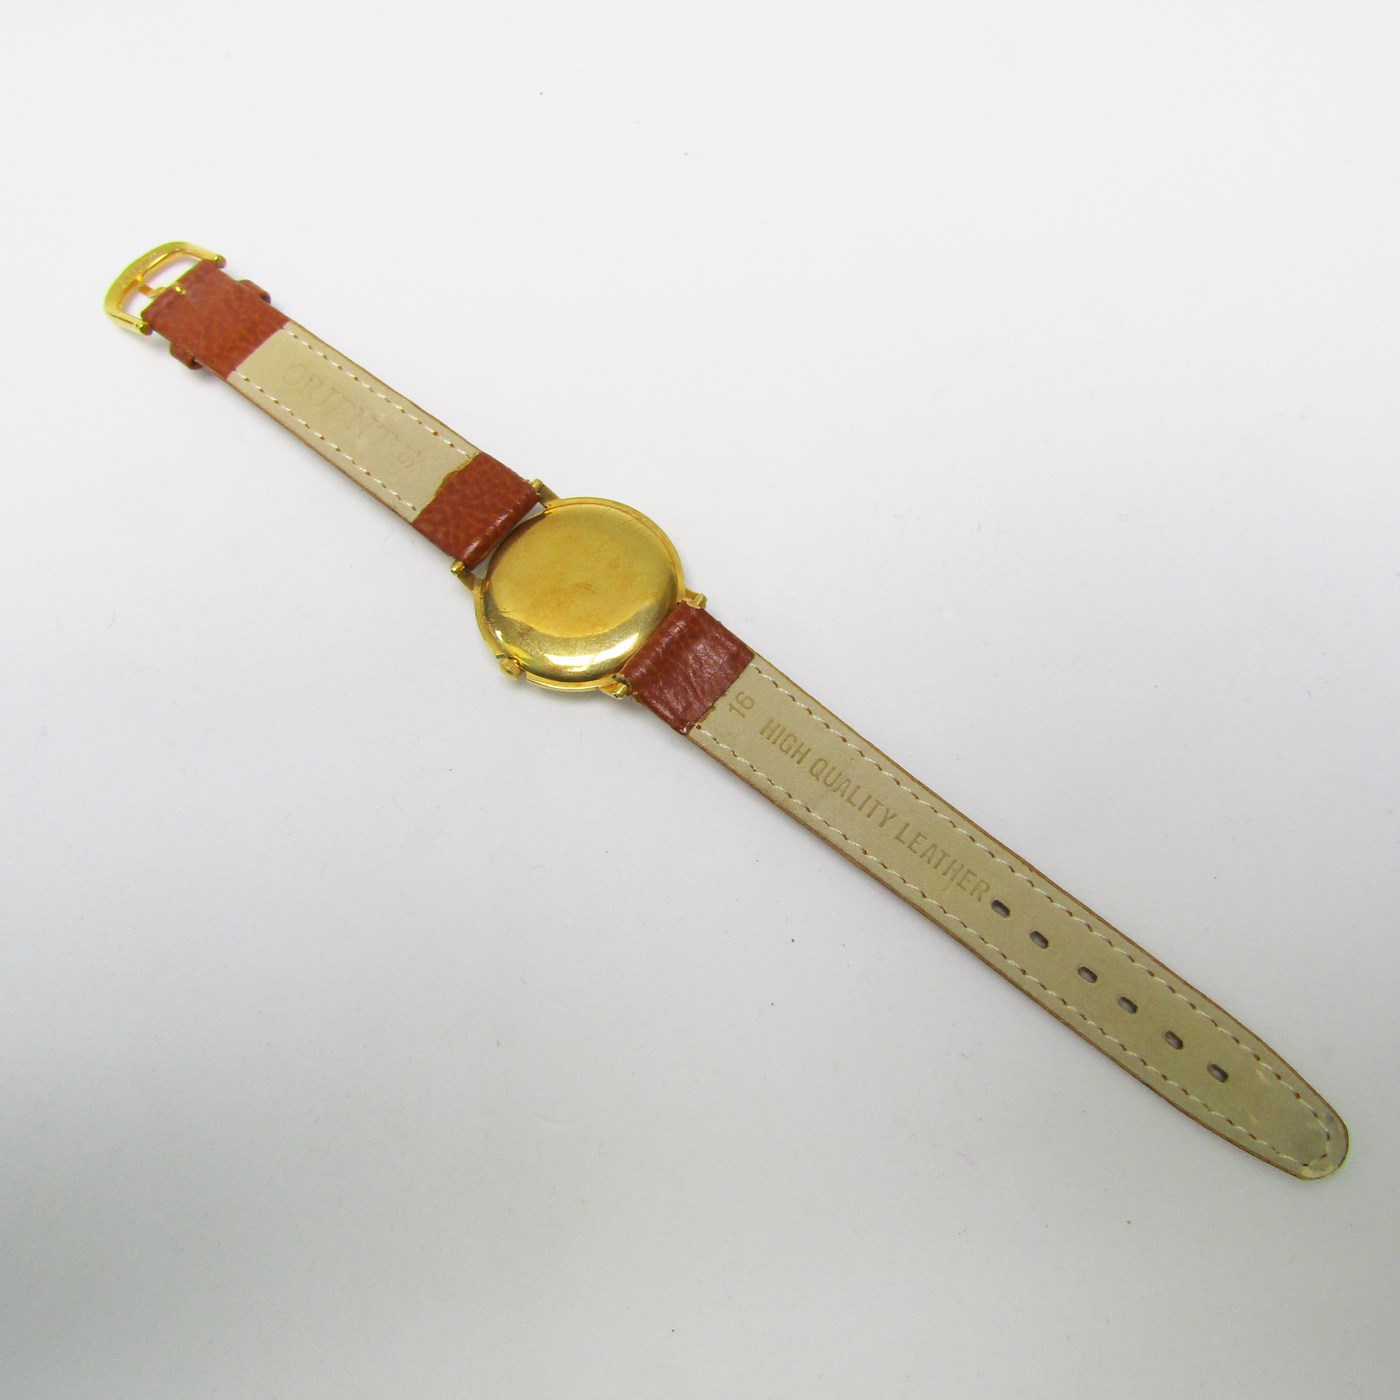 MOVADO. Reloj de pulsera unisex. Oro 18k. Ca. 1950-1960.